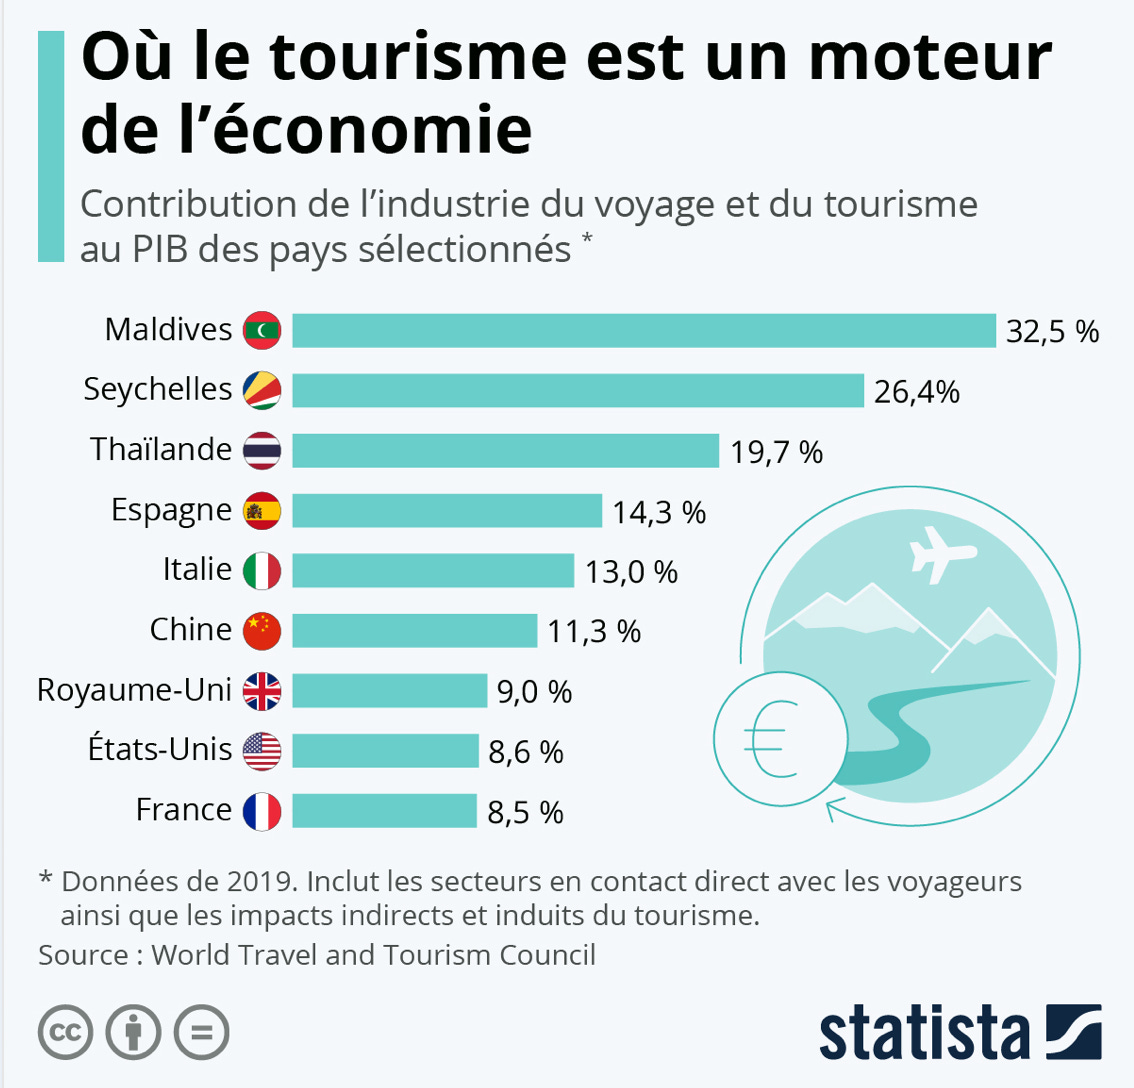 Le tourisme moteur de l'économie